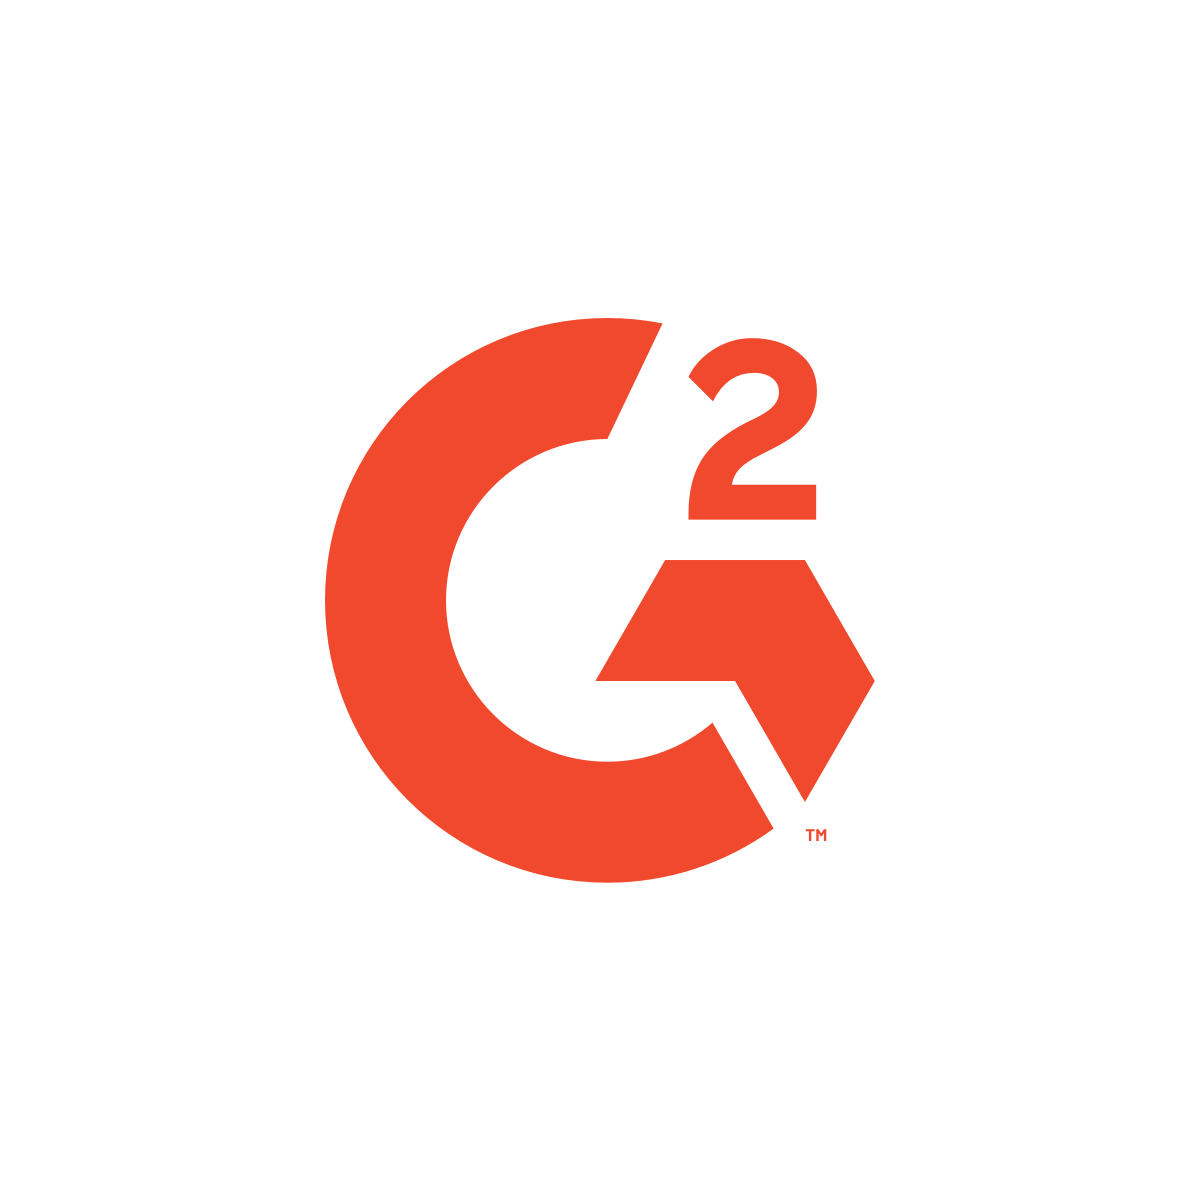 G2.com IPO